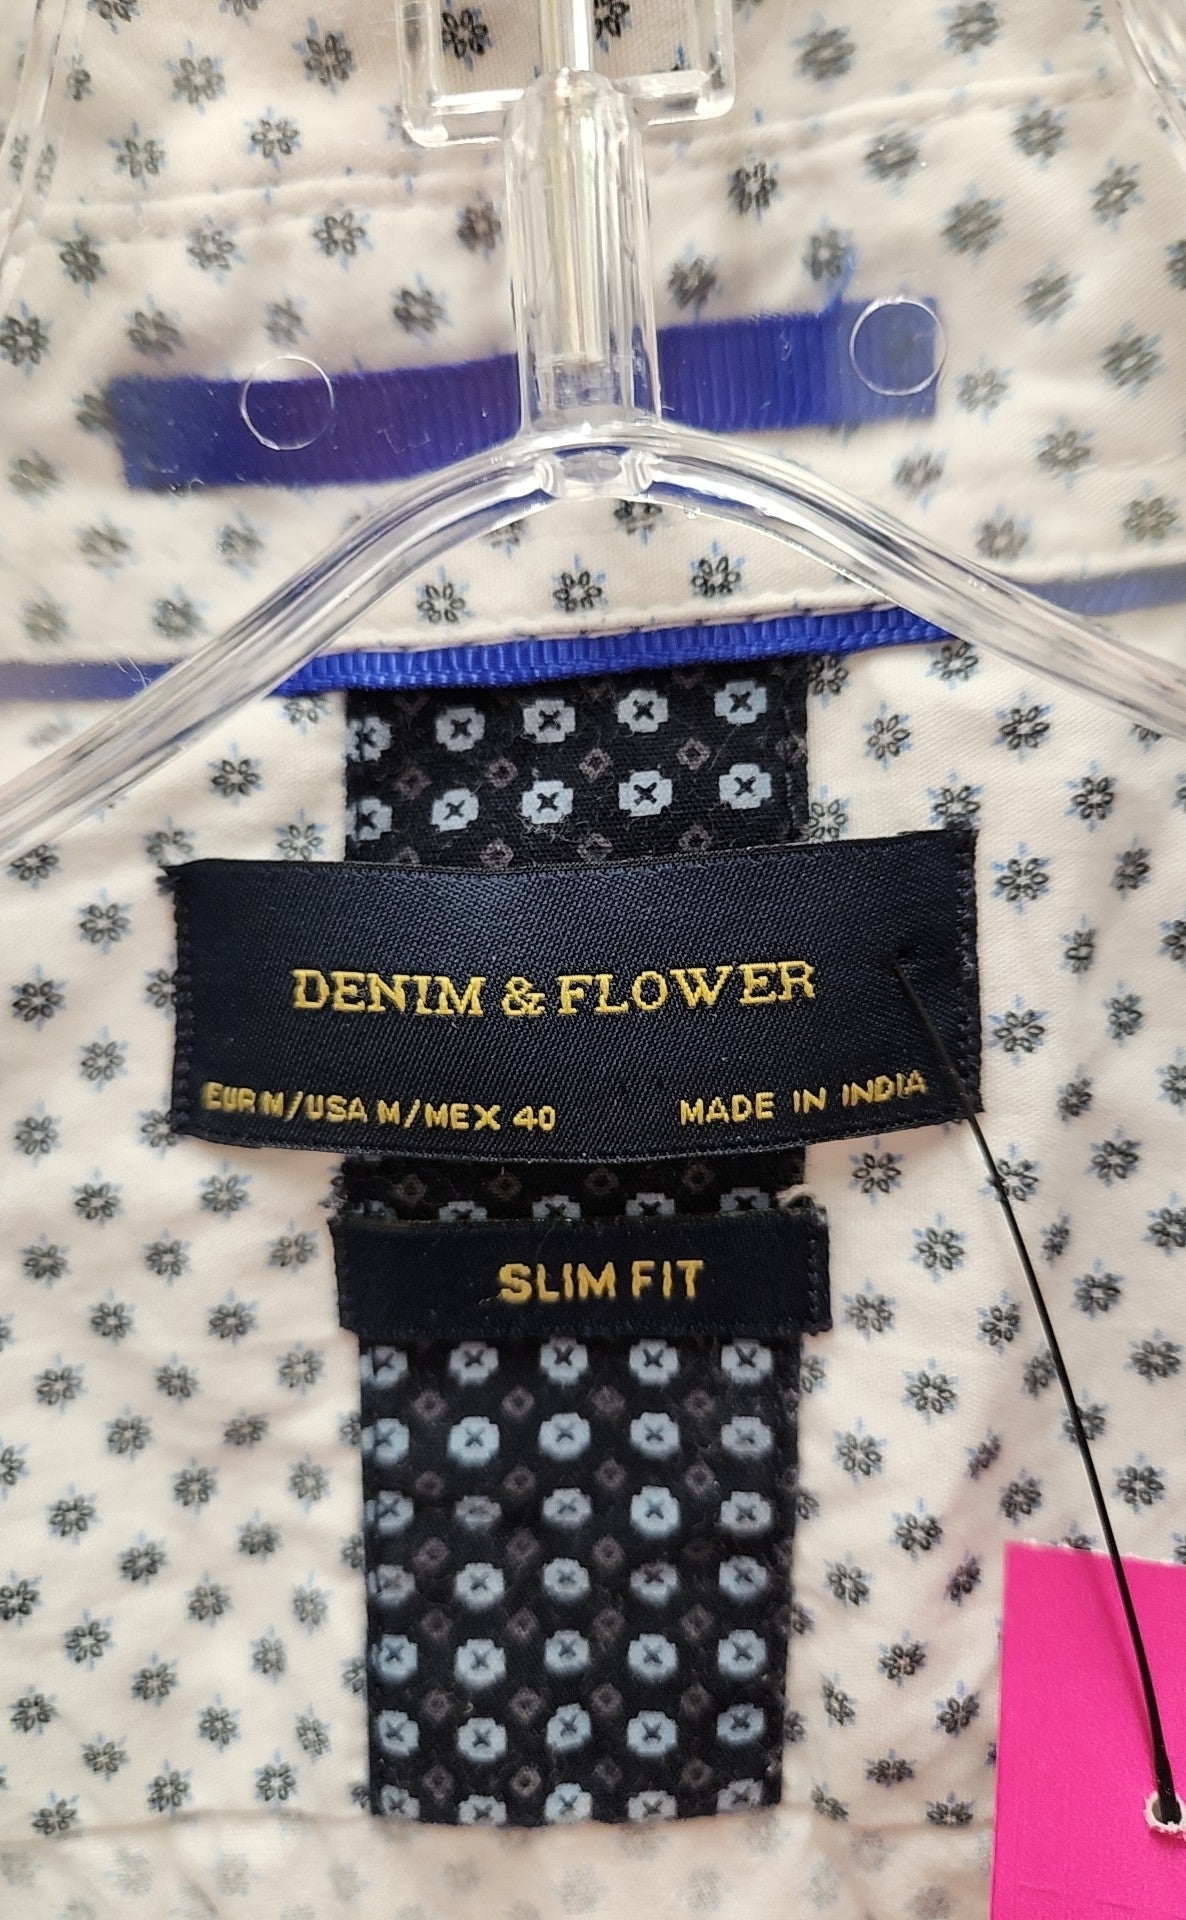 Denim & Flower Men's Size M White Shirt